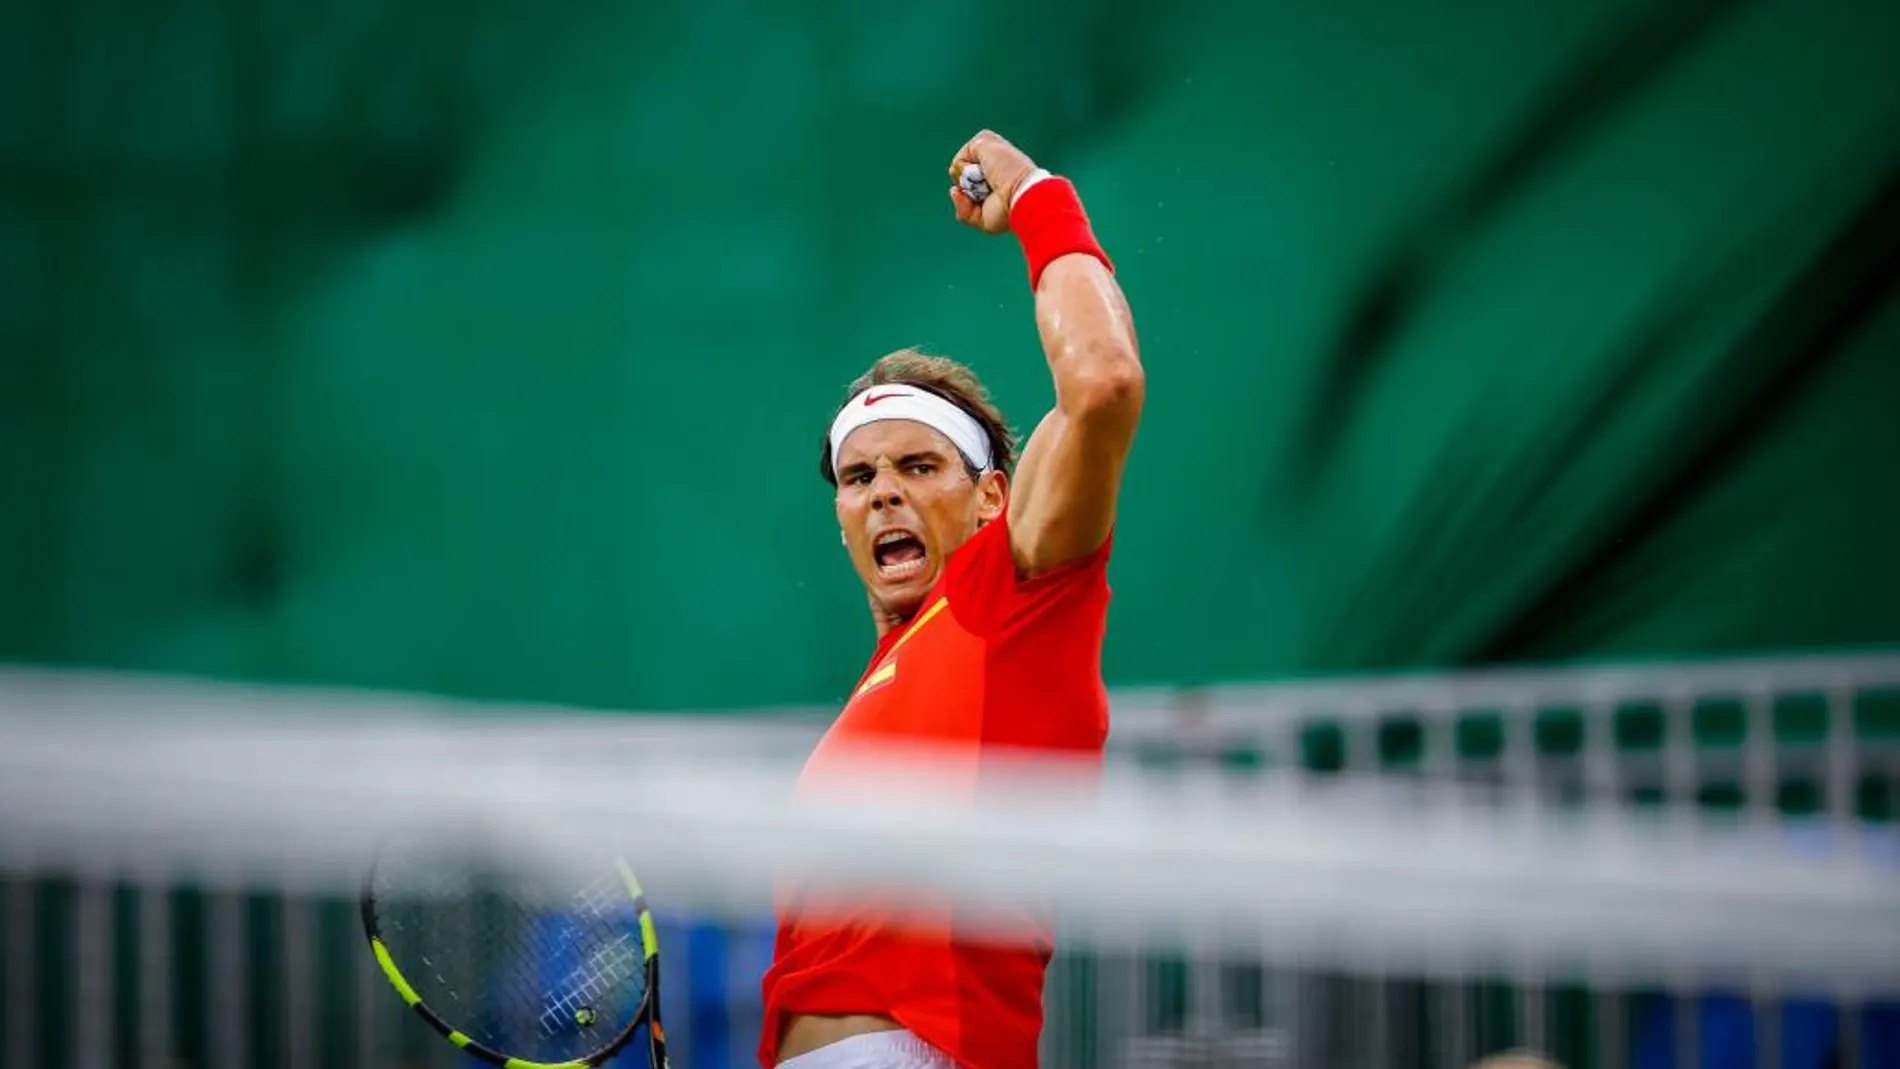 El tenista español Rafael Nadal en acción contra el jugador de Argentina, Federico Delbonis